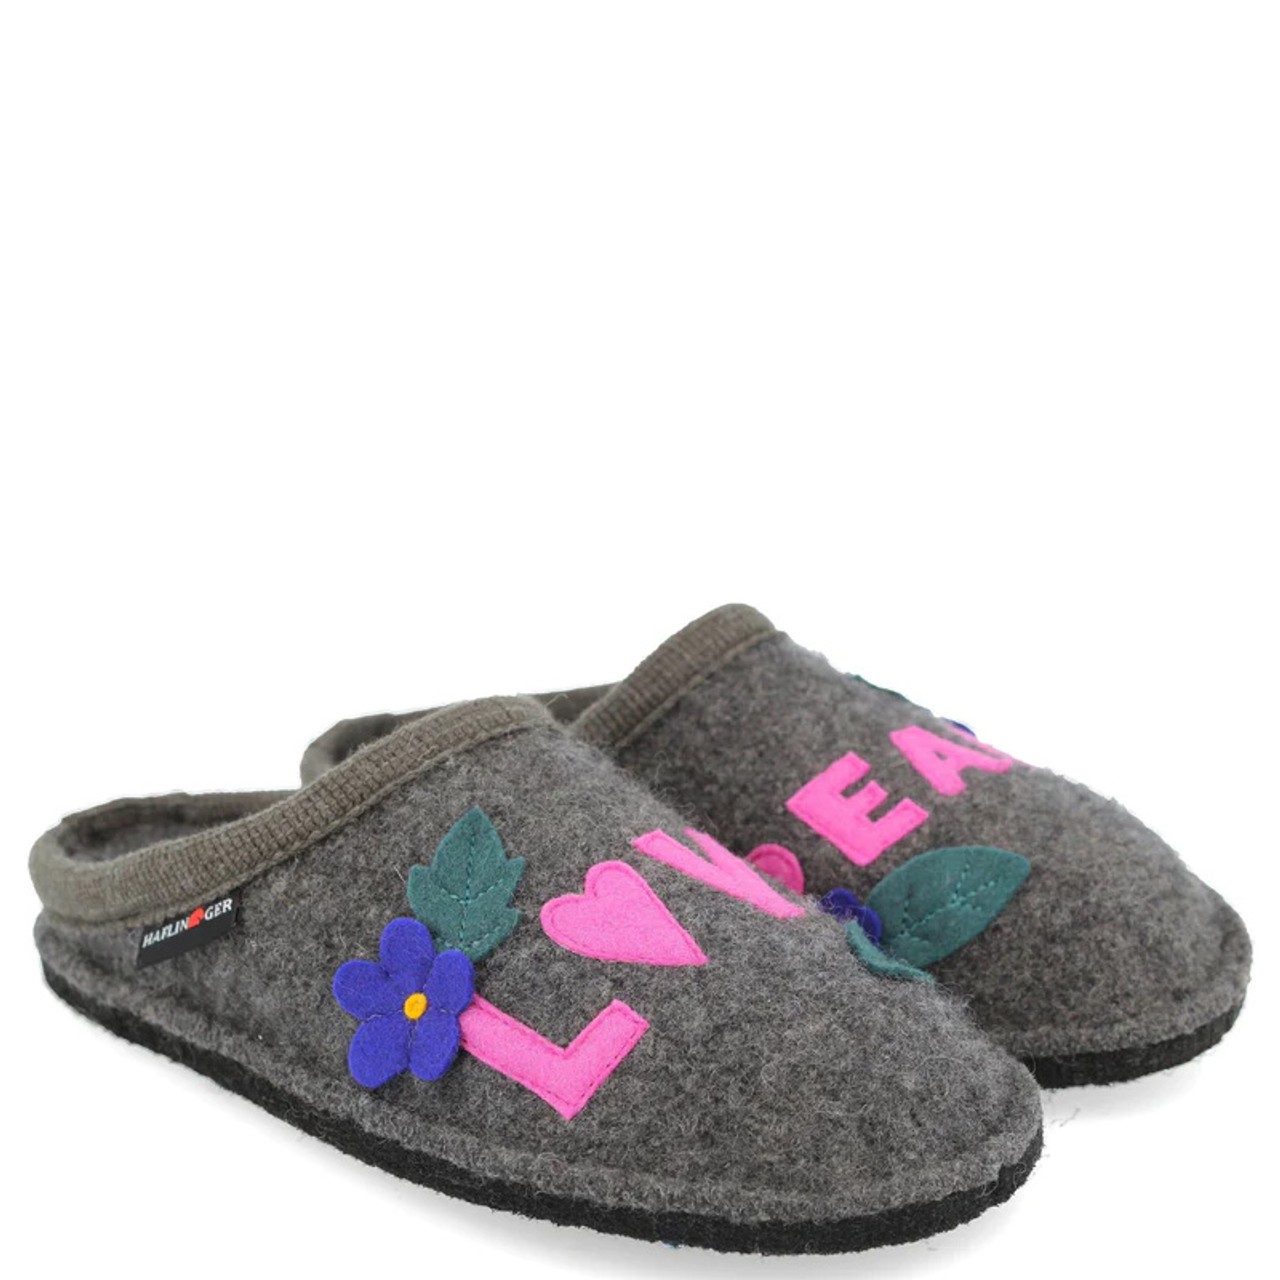 Haflinger LOVE Slippers - Family Footwear Center